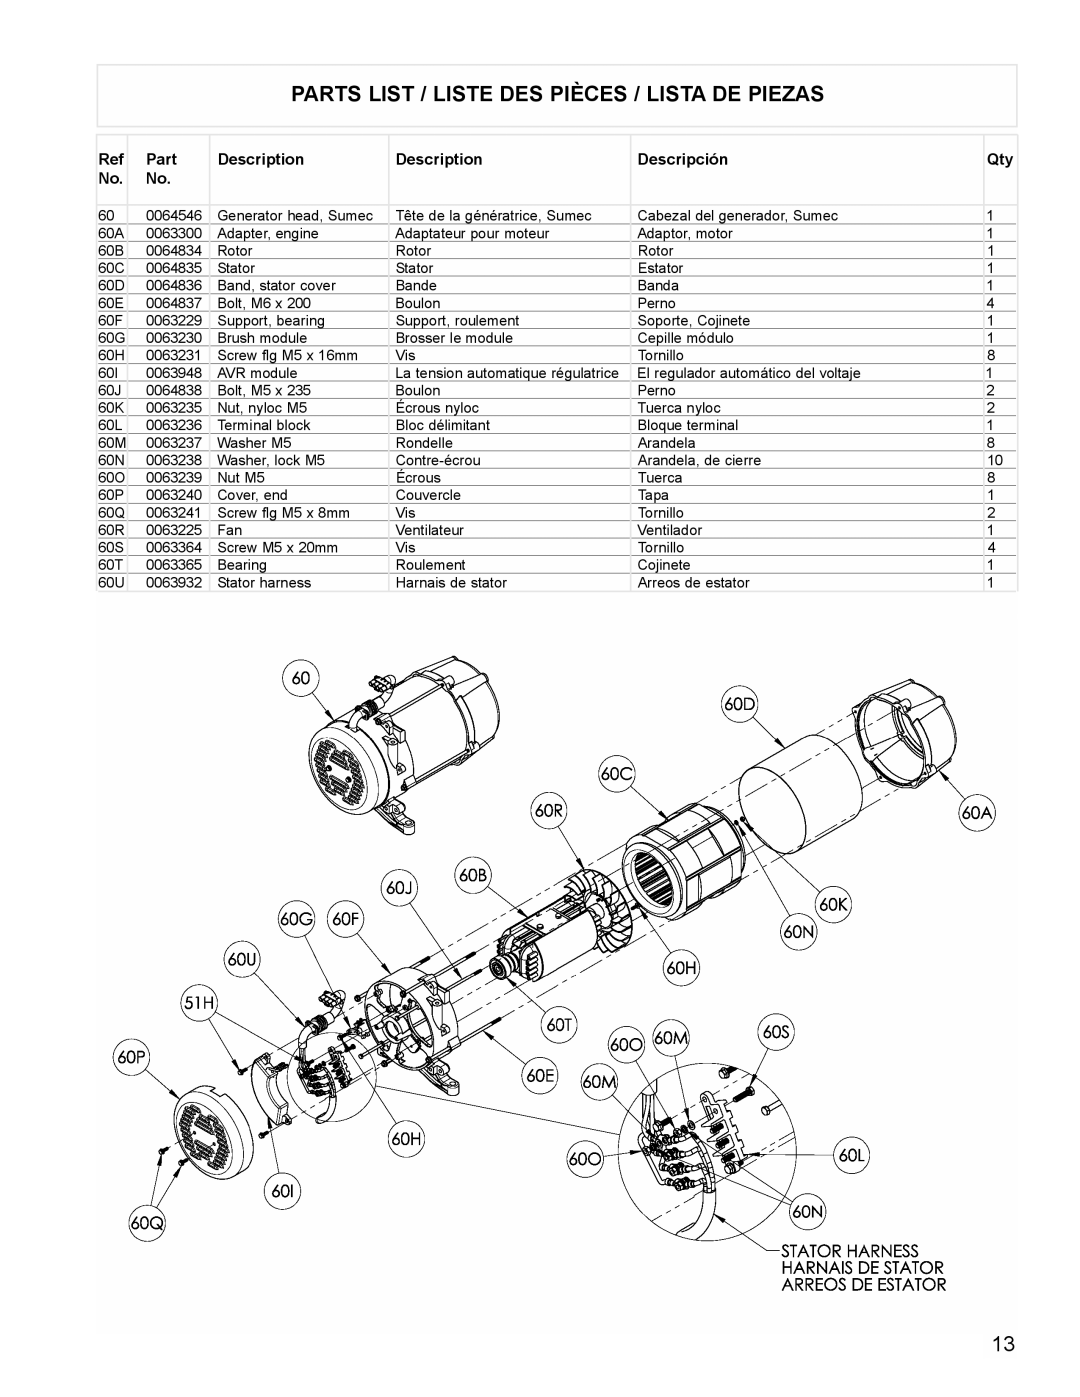 Powermate PM0676800 manual Parts List / Liste Des Pièces / Lista De Piezas, Description, Descripción 